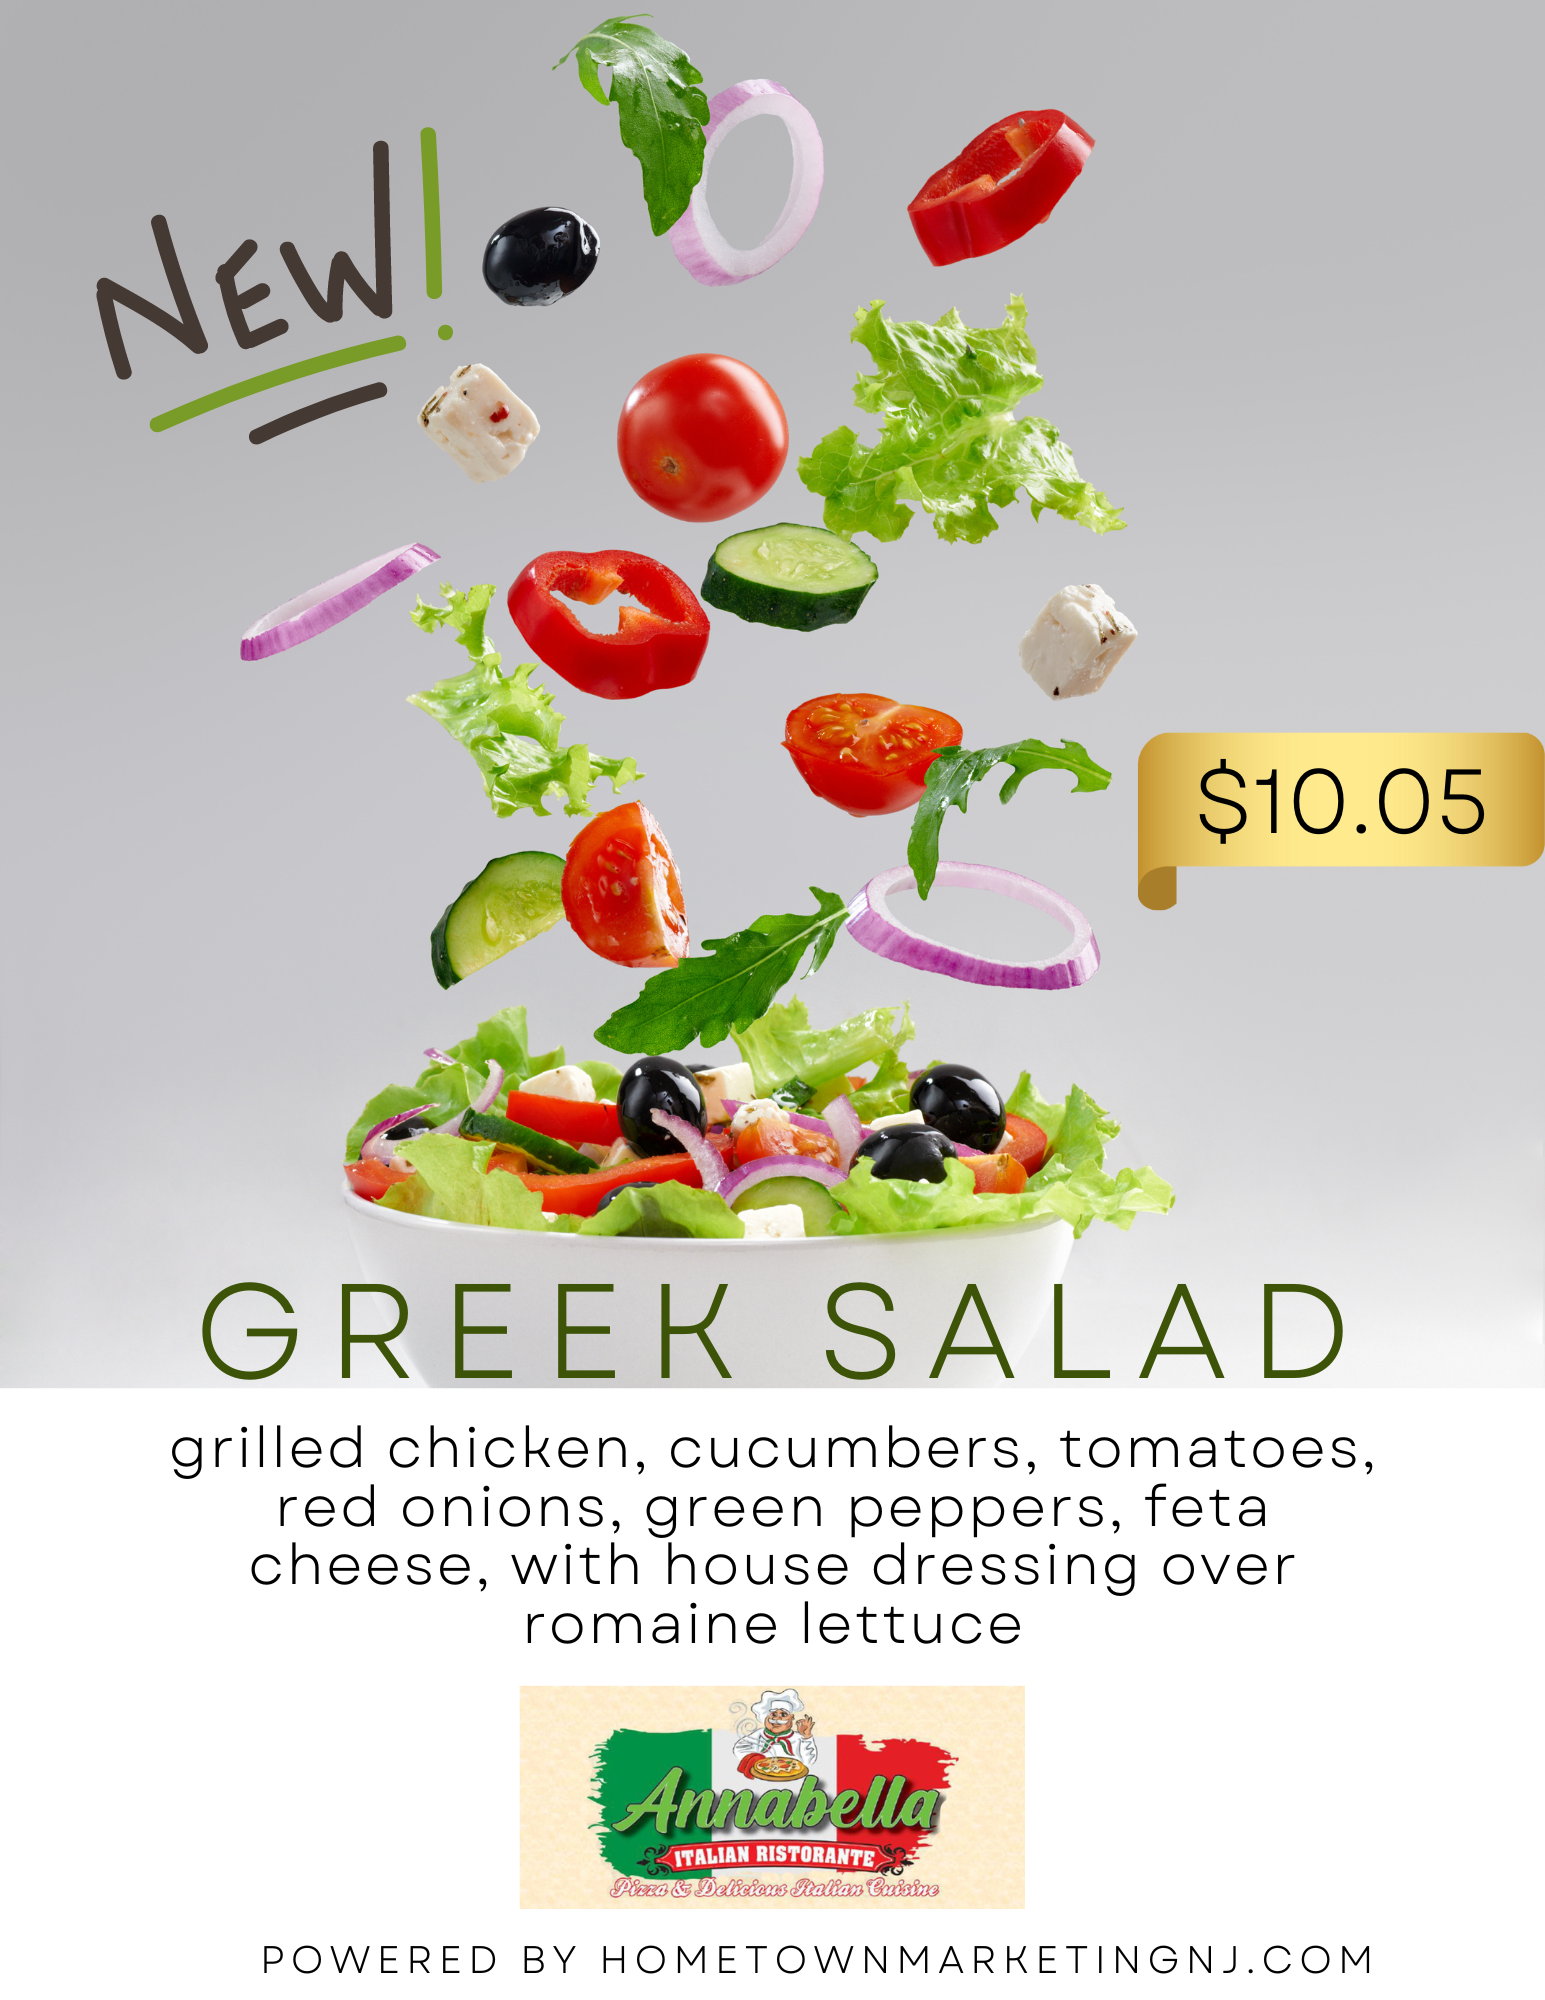 Annabella Greek Salad